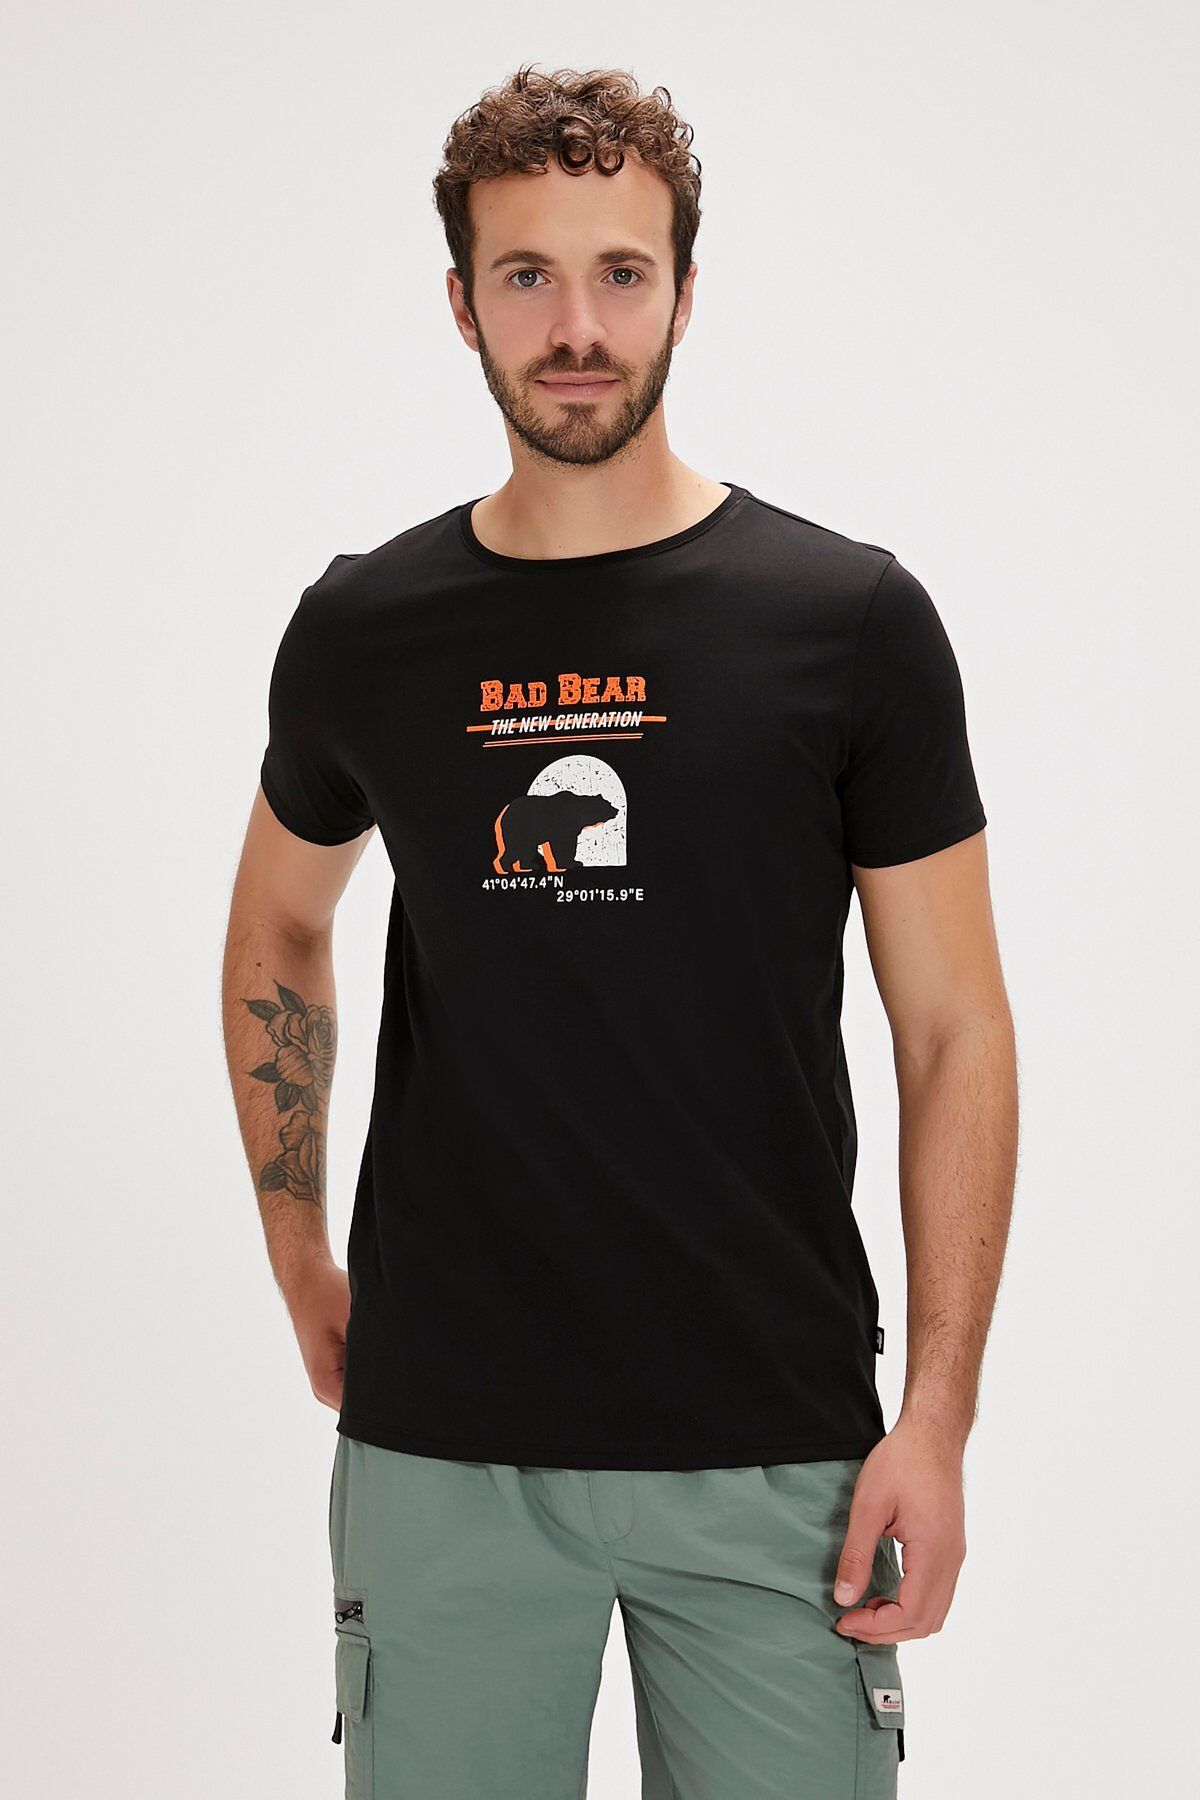 Bad Bear DEREK T-SHIRT SİYAH Erkek Tshirt